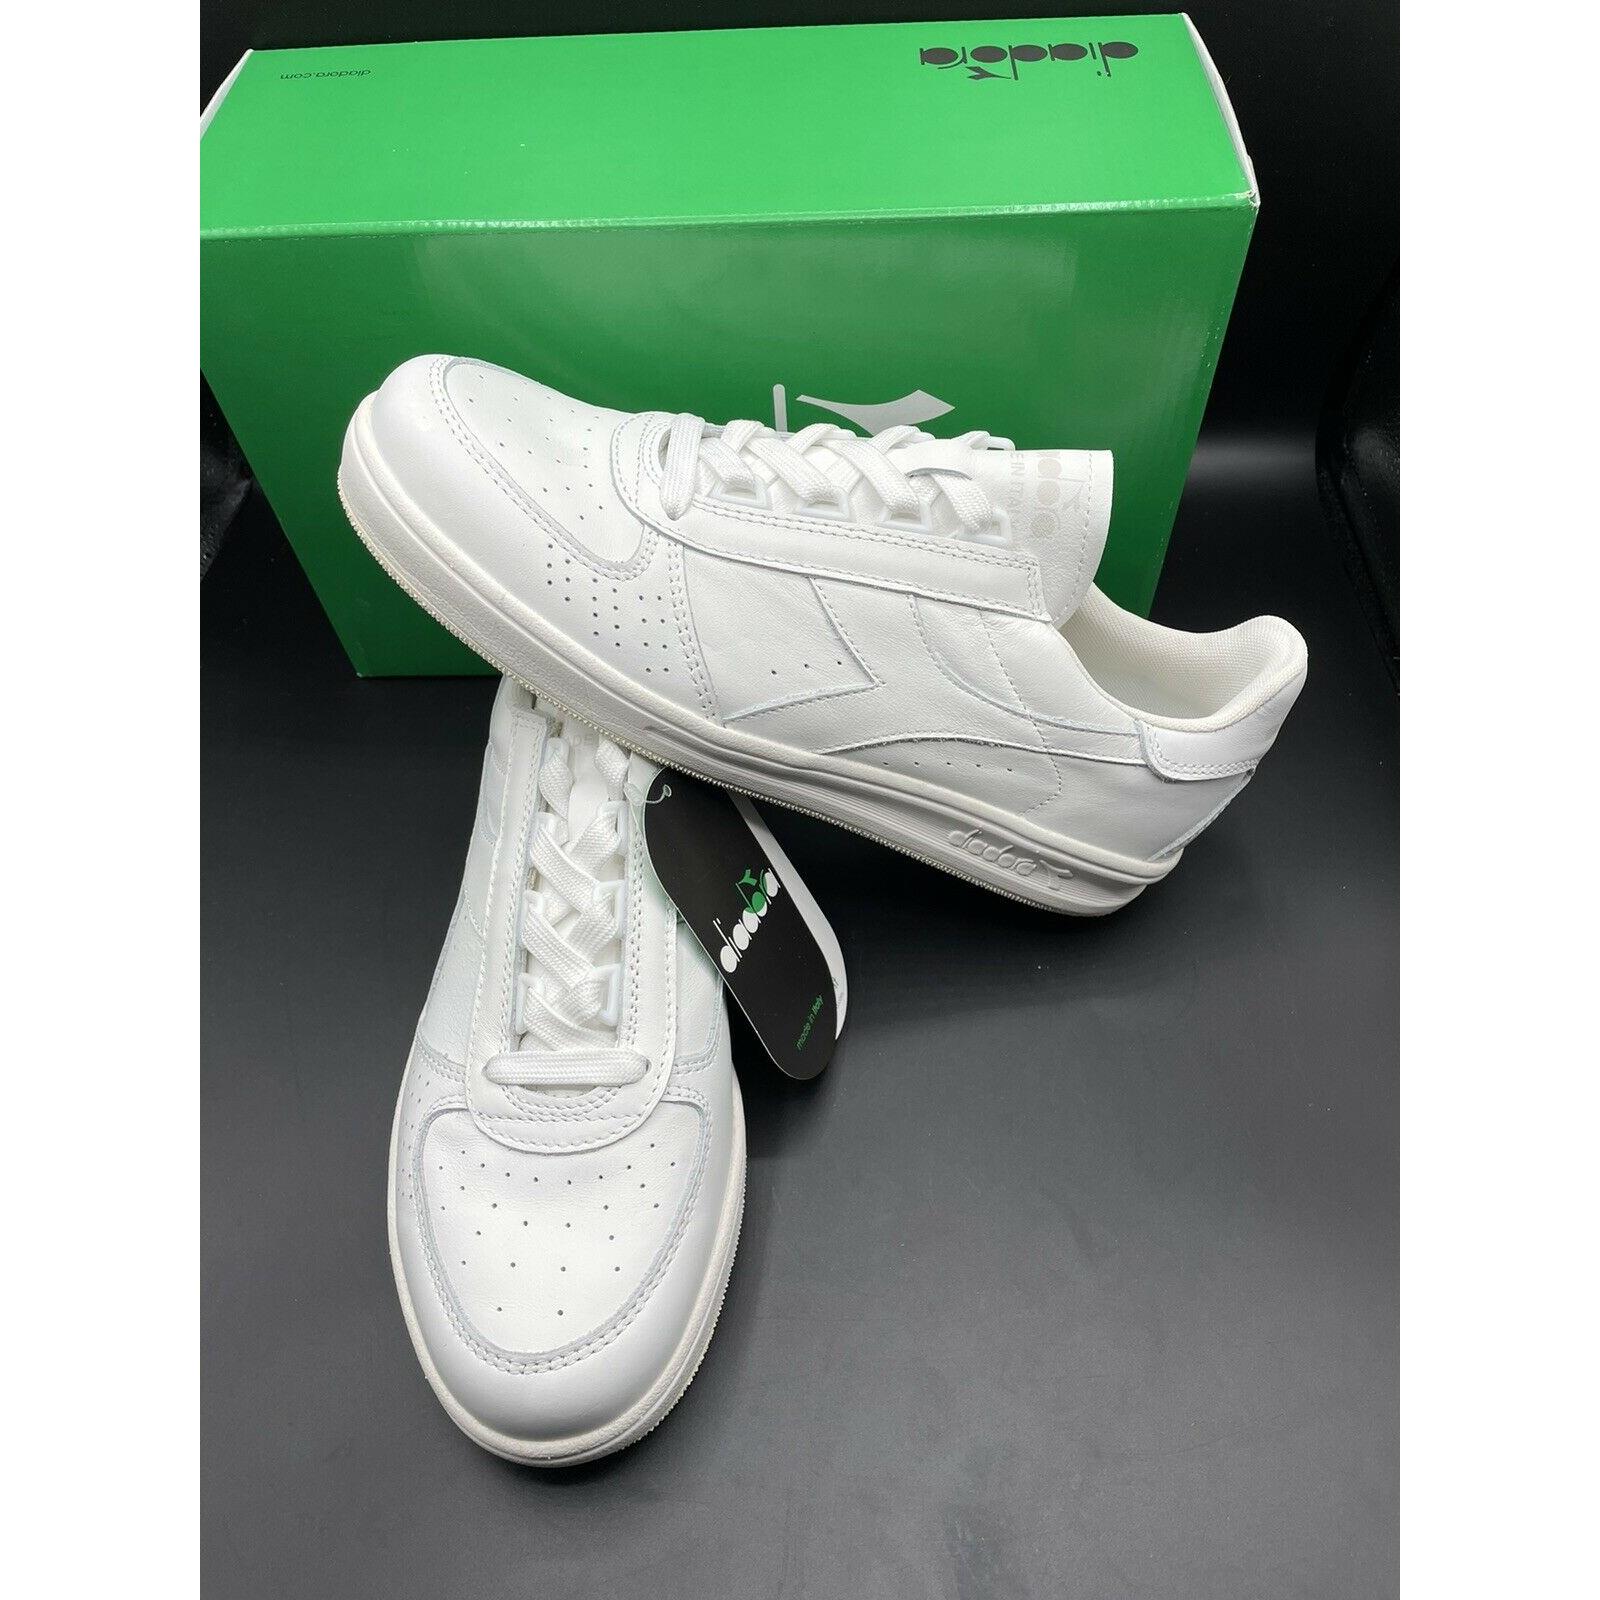 Diadora B Elite Triple White Leather Men`s Size 9 Tennis Shoes